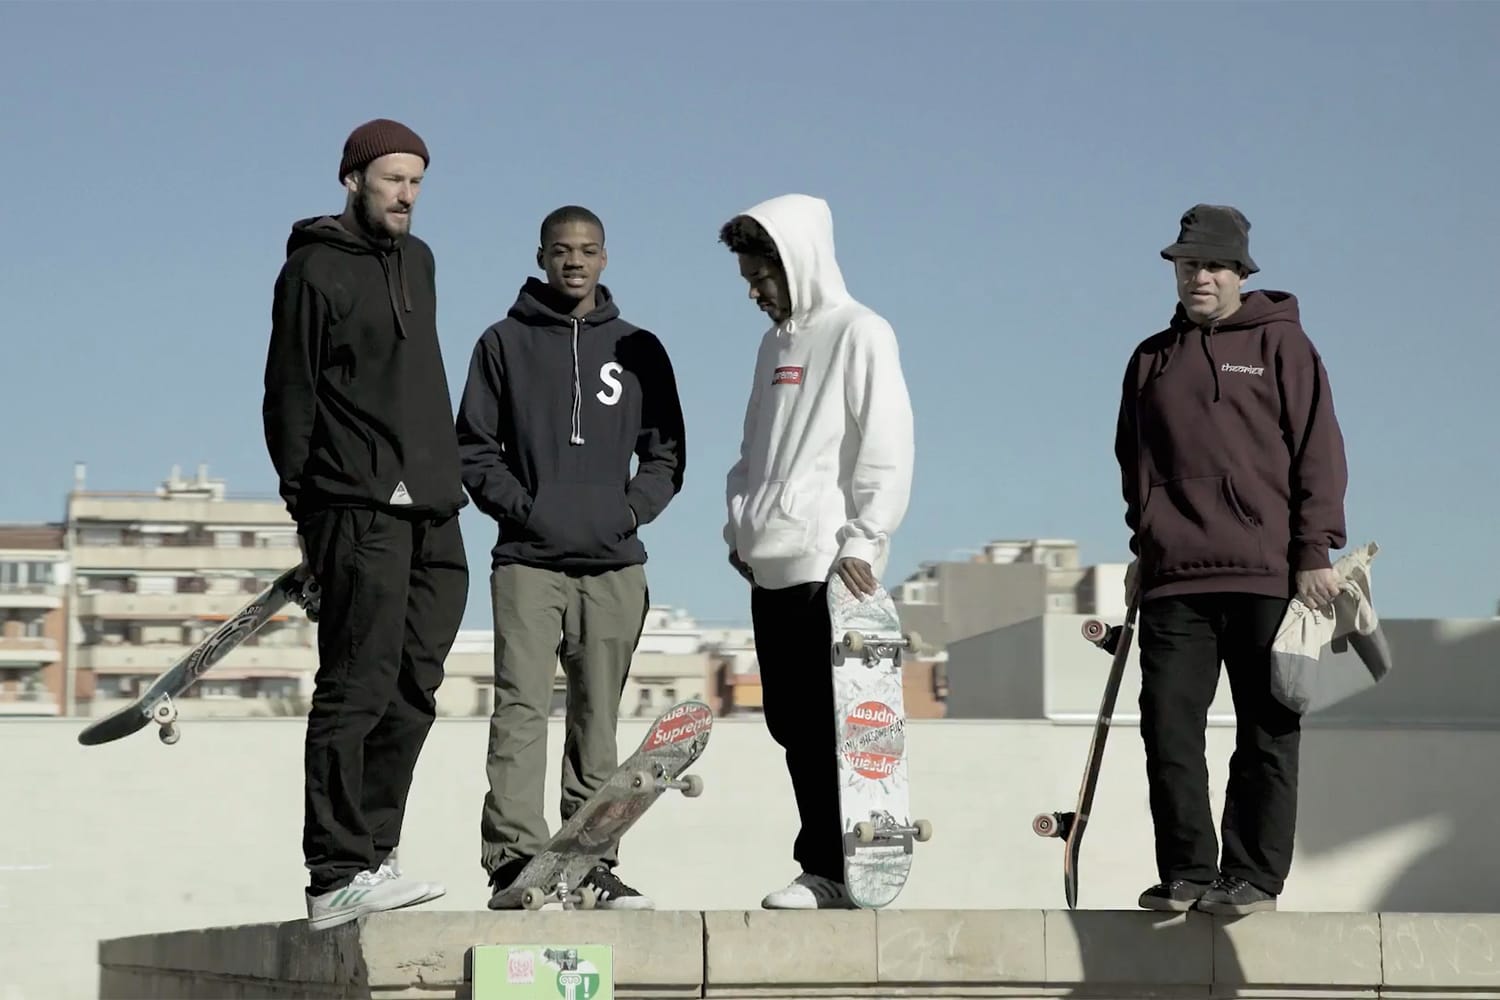 adidas skateboarding movie